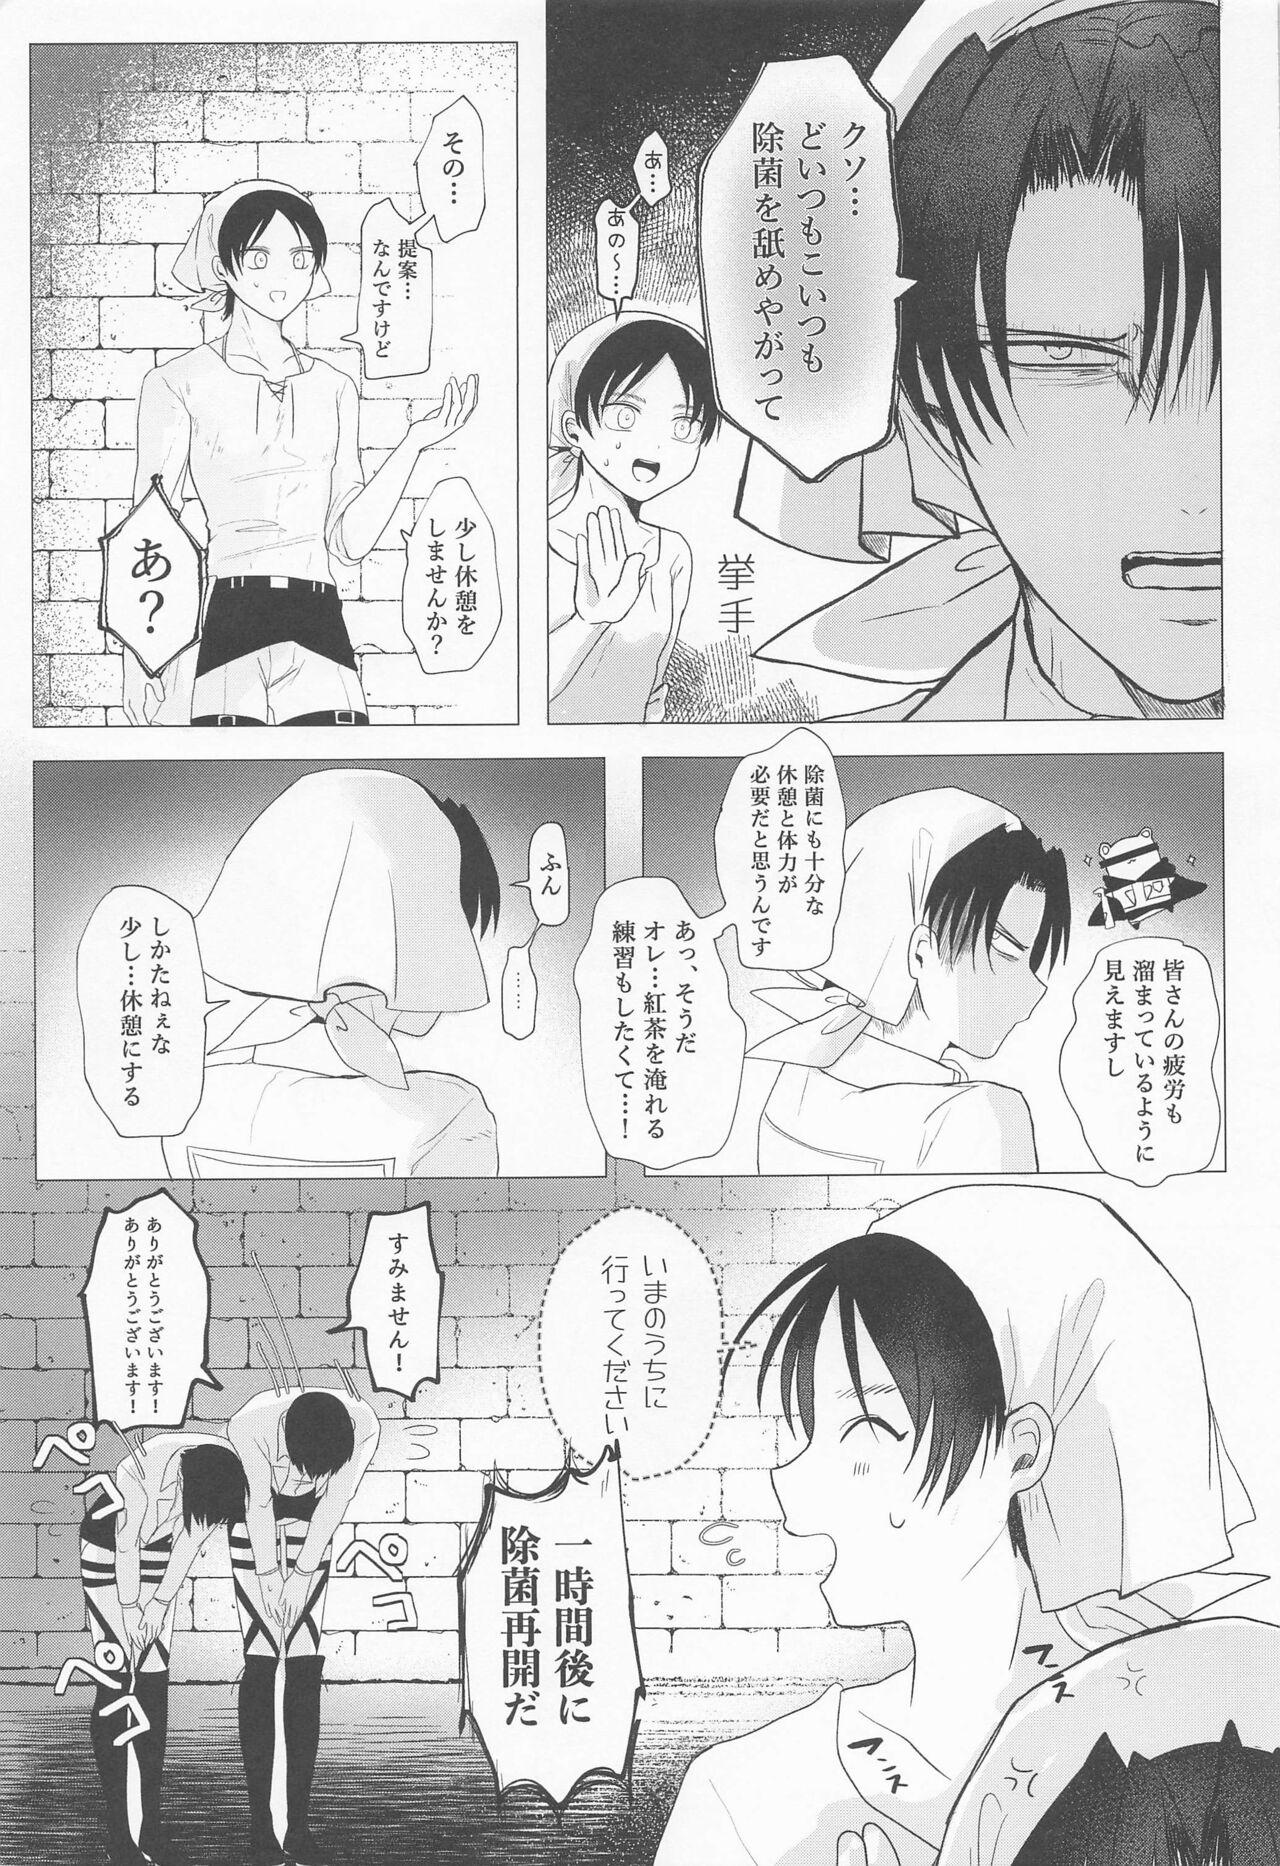 Analfuck 15saikungajokinchonotainaijokinsuruhon - Shingeki no kyojin | attack on titan Lesbo - Page 4